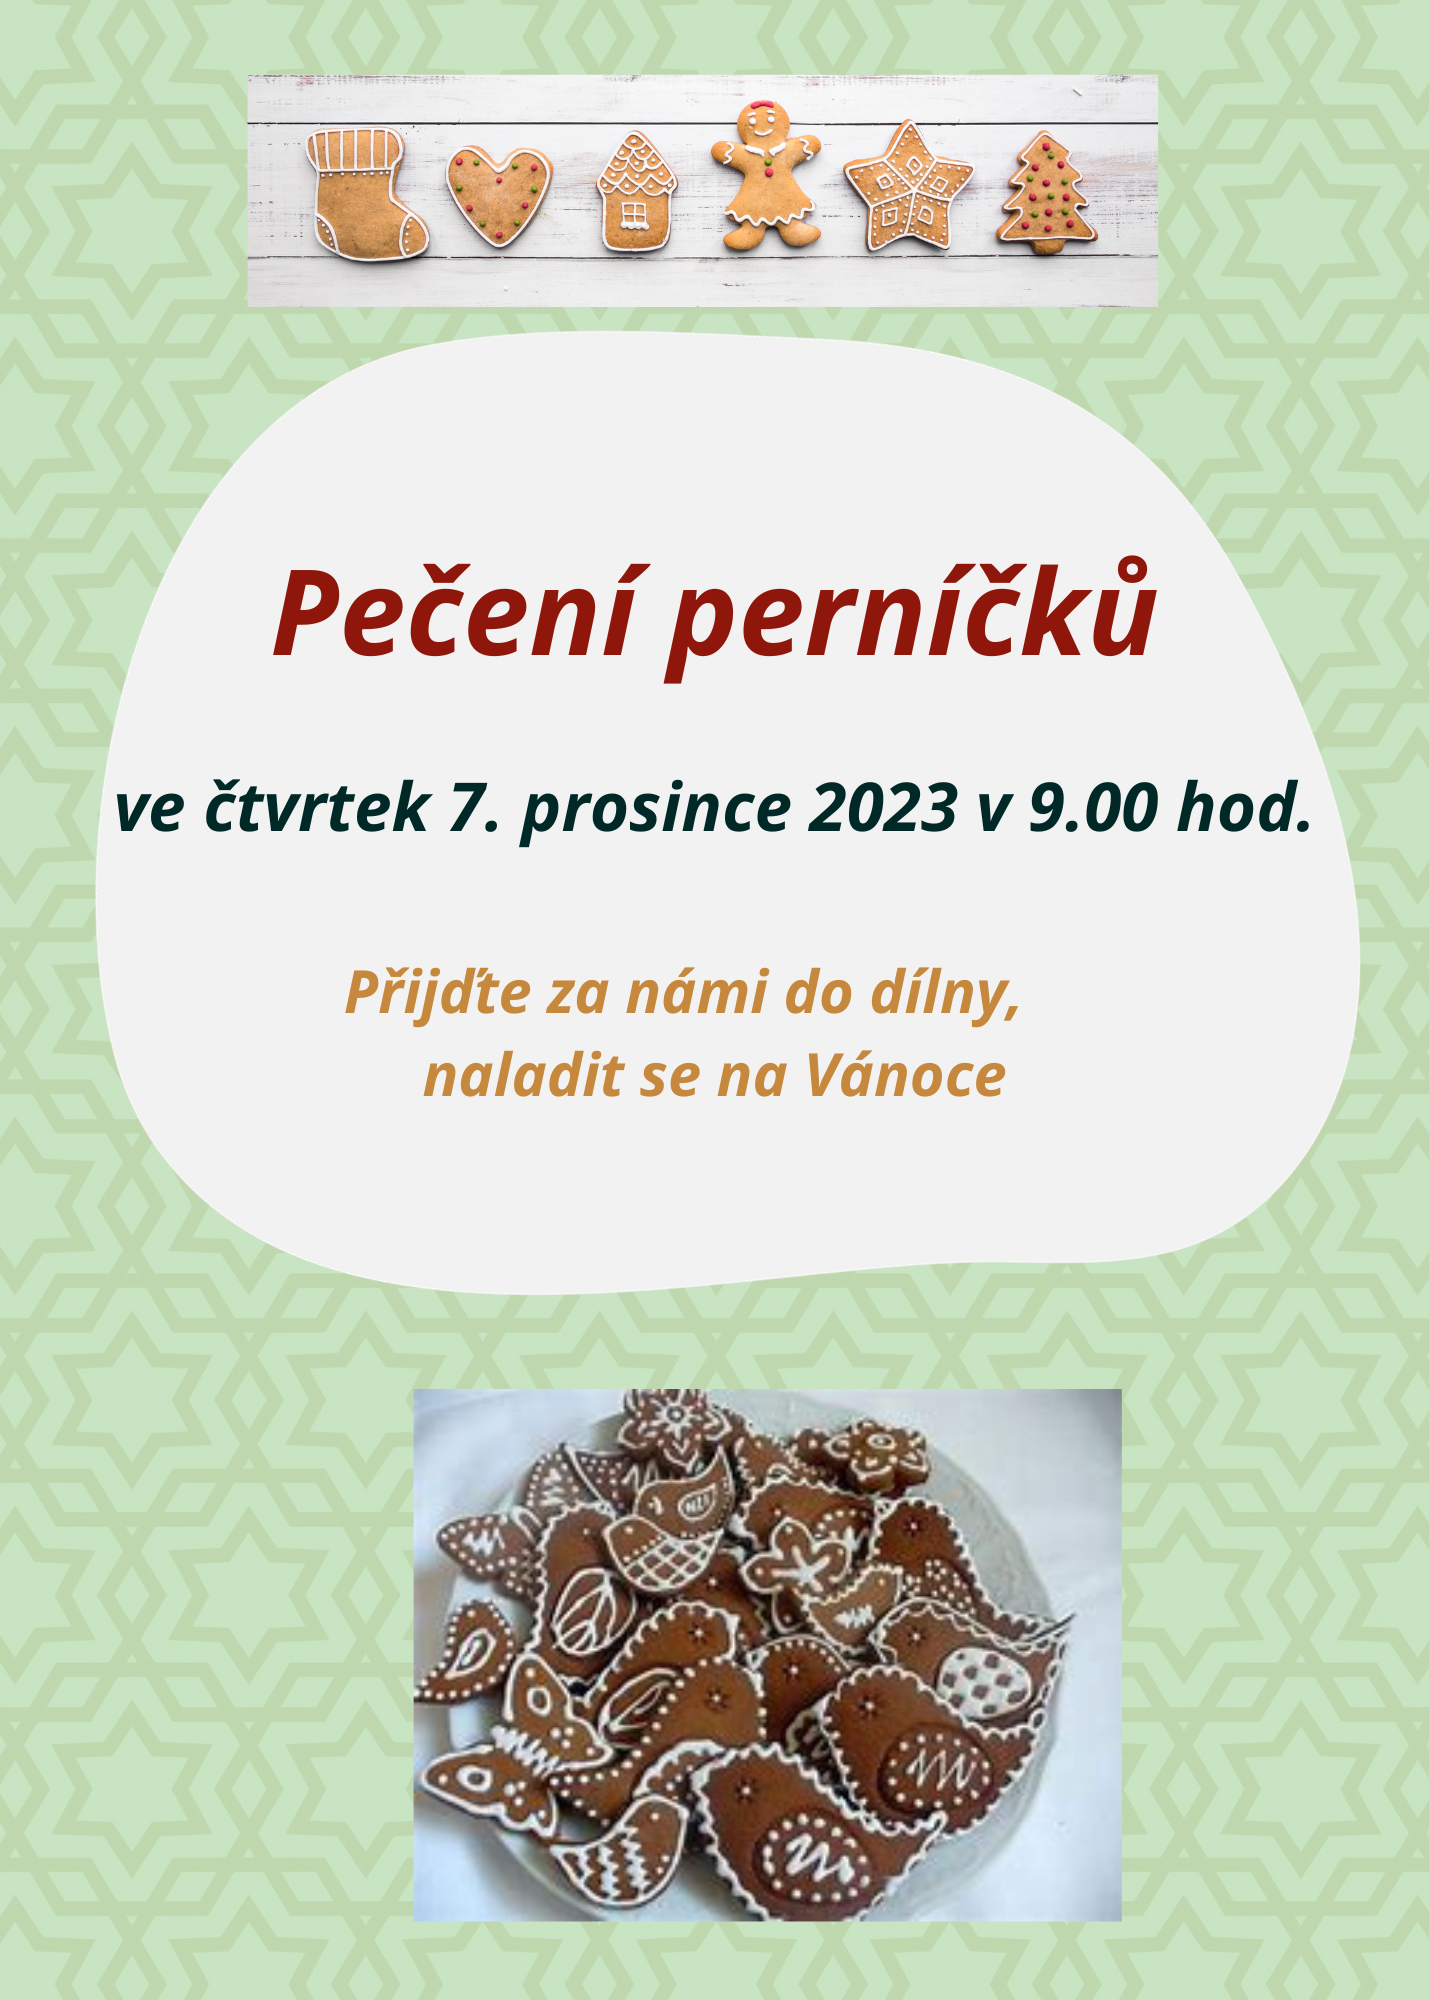 Peceni-pernicku-7-prosince-2023.png